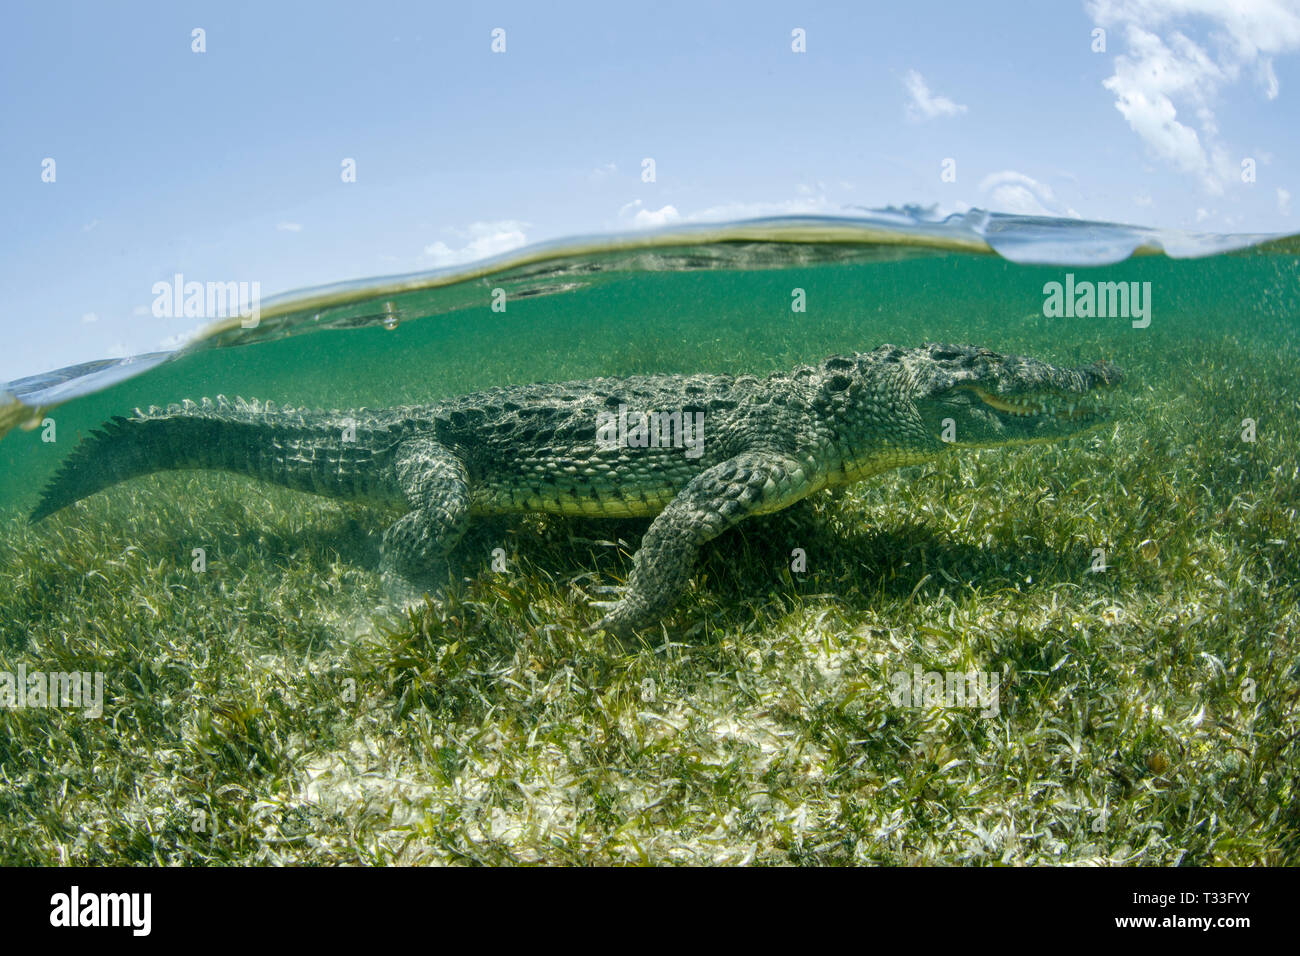 El cocodrilo americano Crocodylus acutus, Banco Chinchorro, Mar Caribe, México Foto de stock